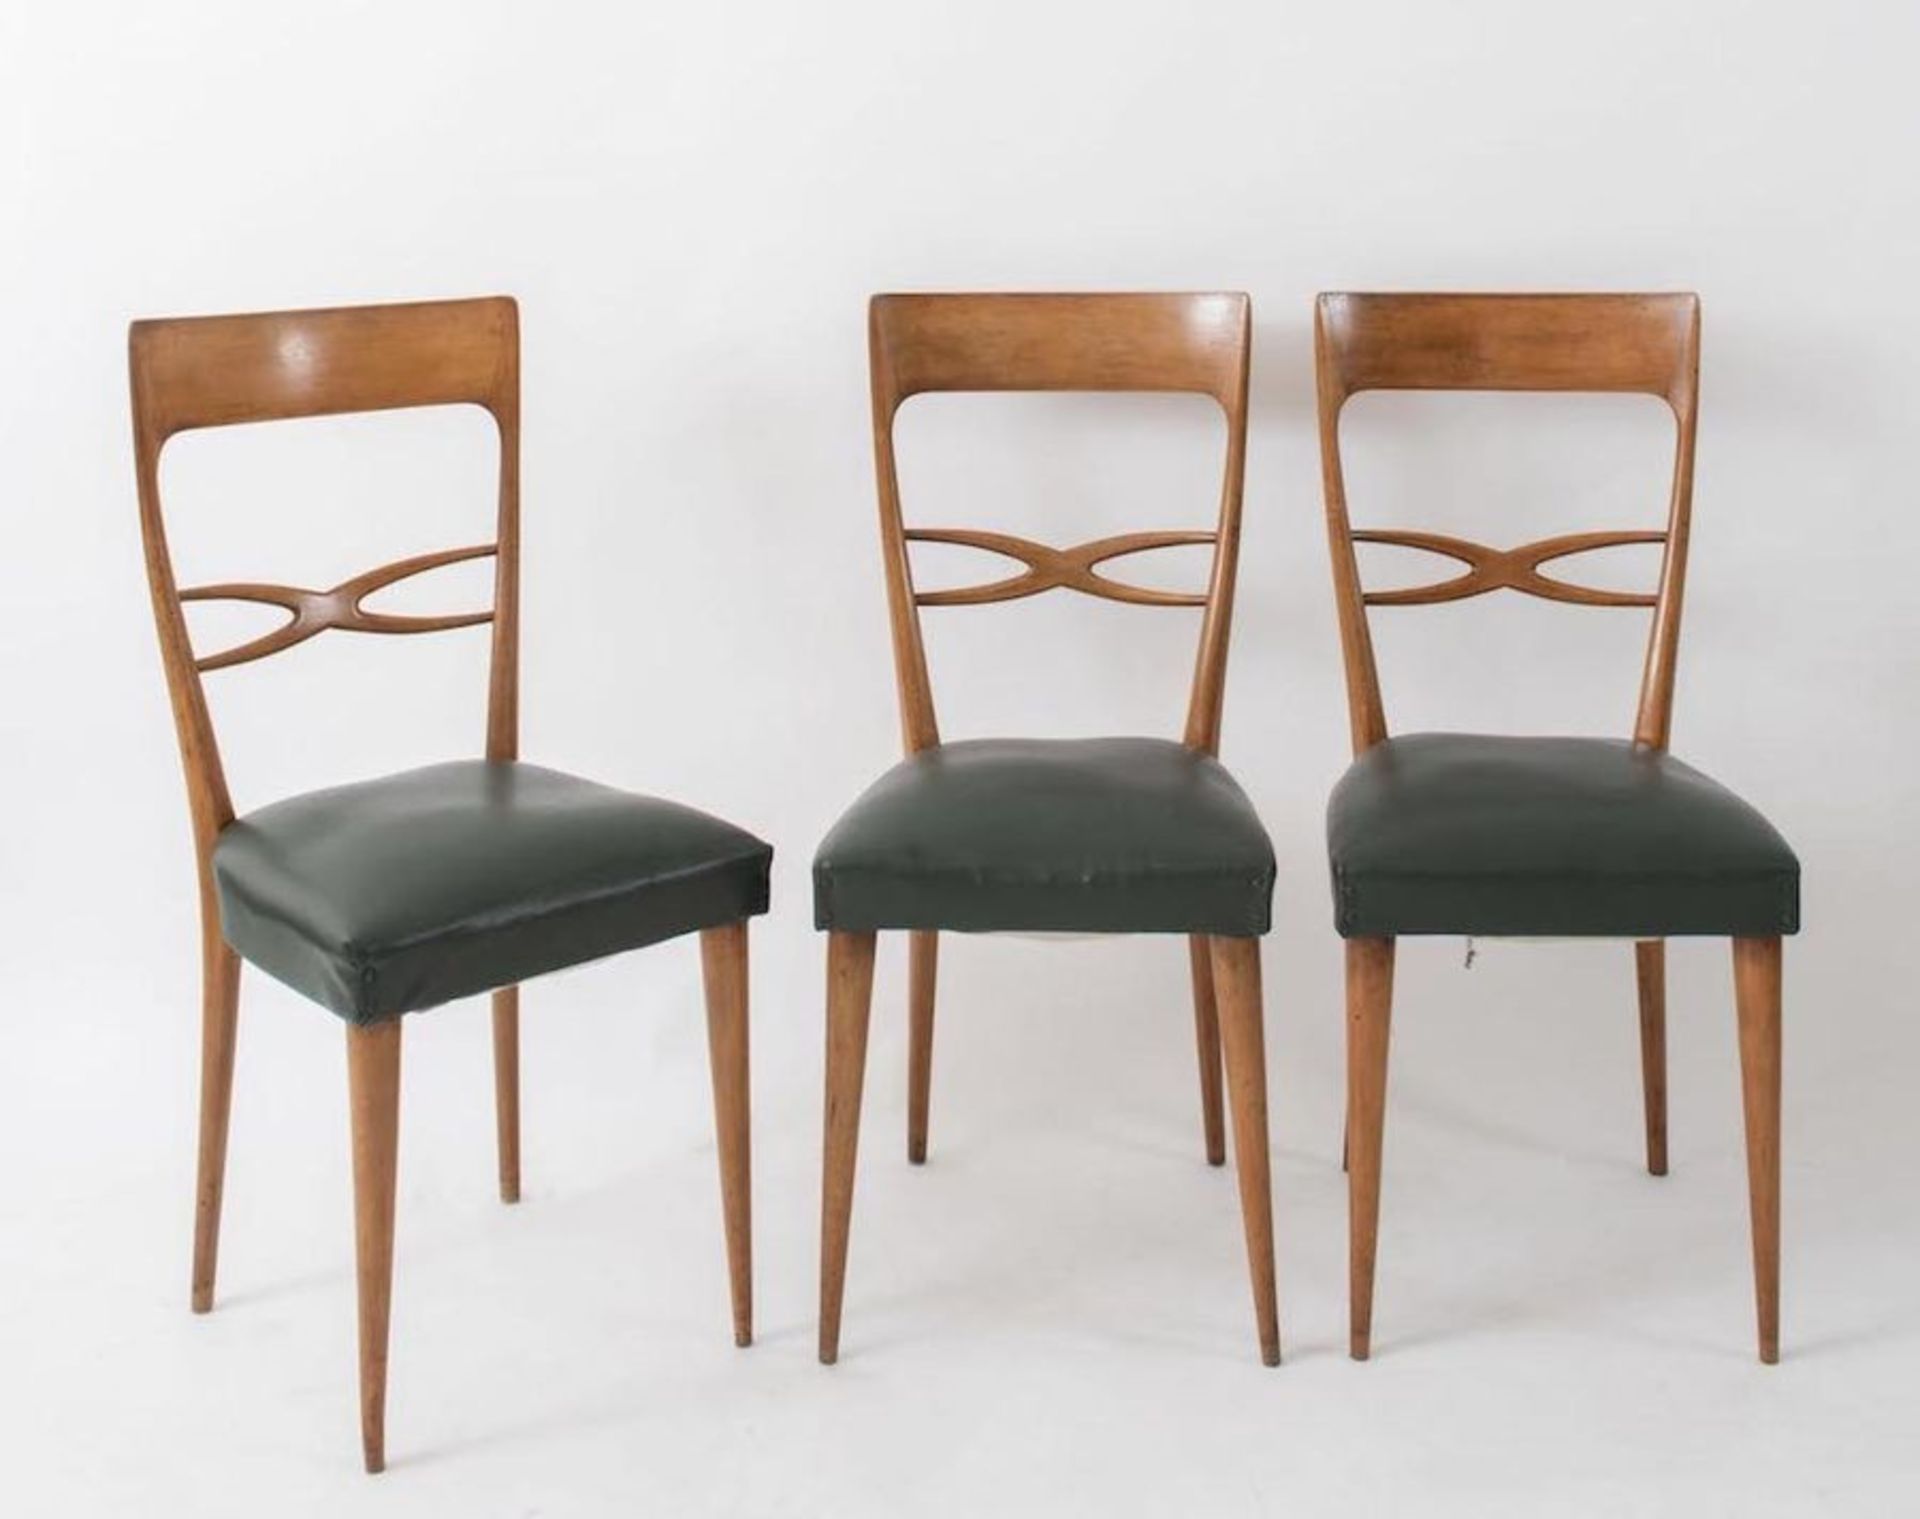 MELCHIORRE BEGA, attr. Sei sedie in legno con rivestimento in pelle. Prod. Italia, 1960 ca. Cm 95x42 - Bild 3 aus 3